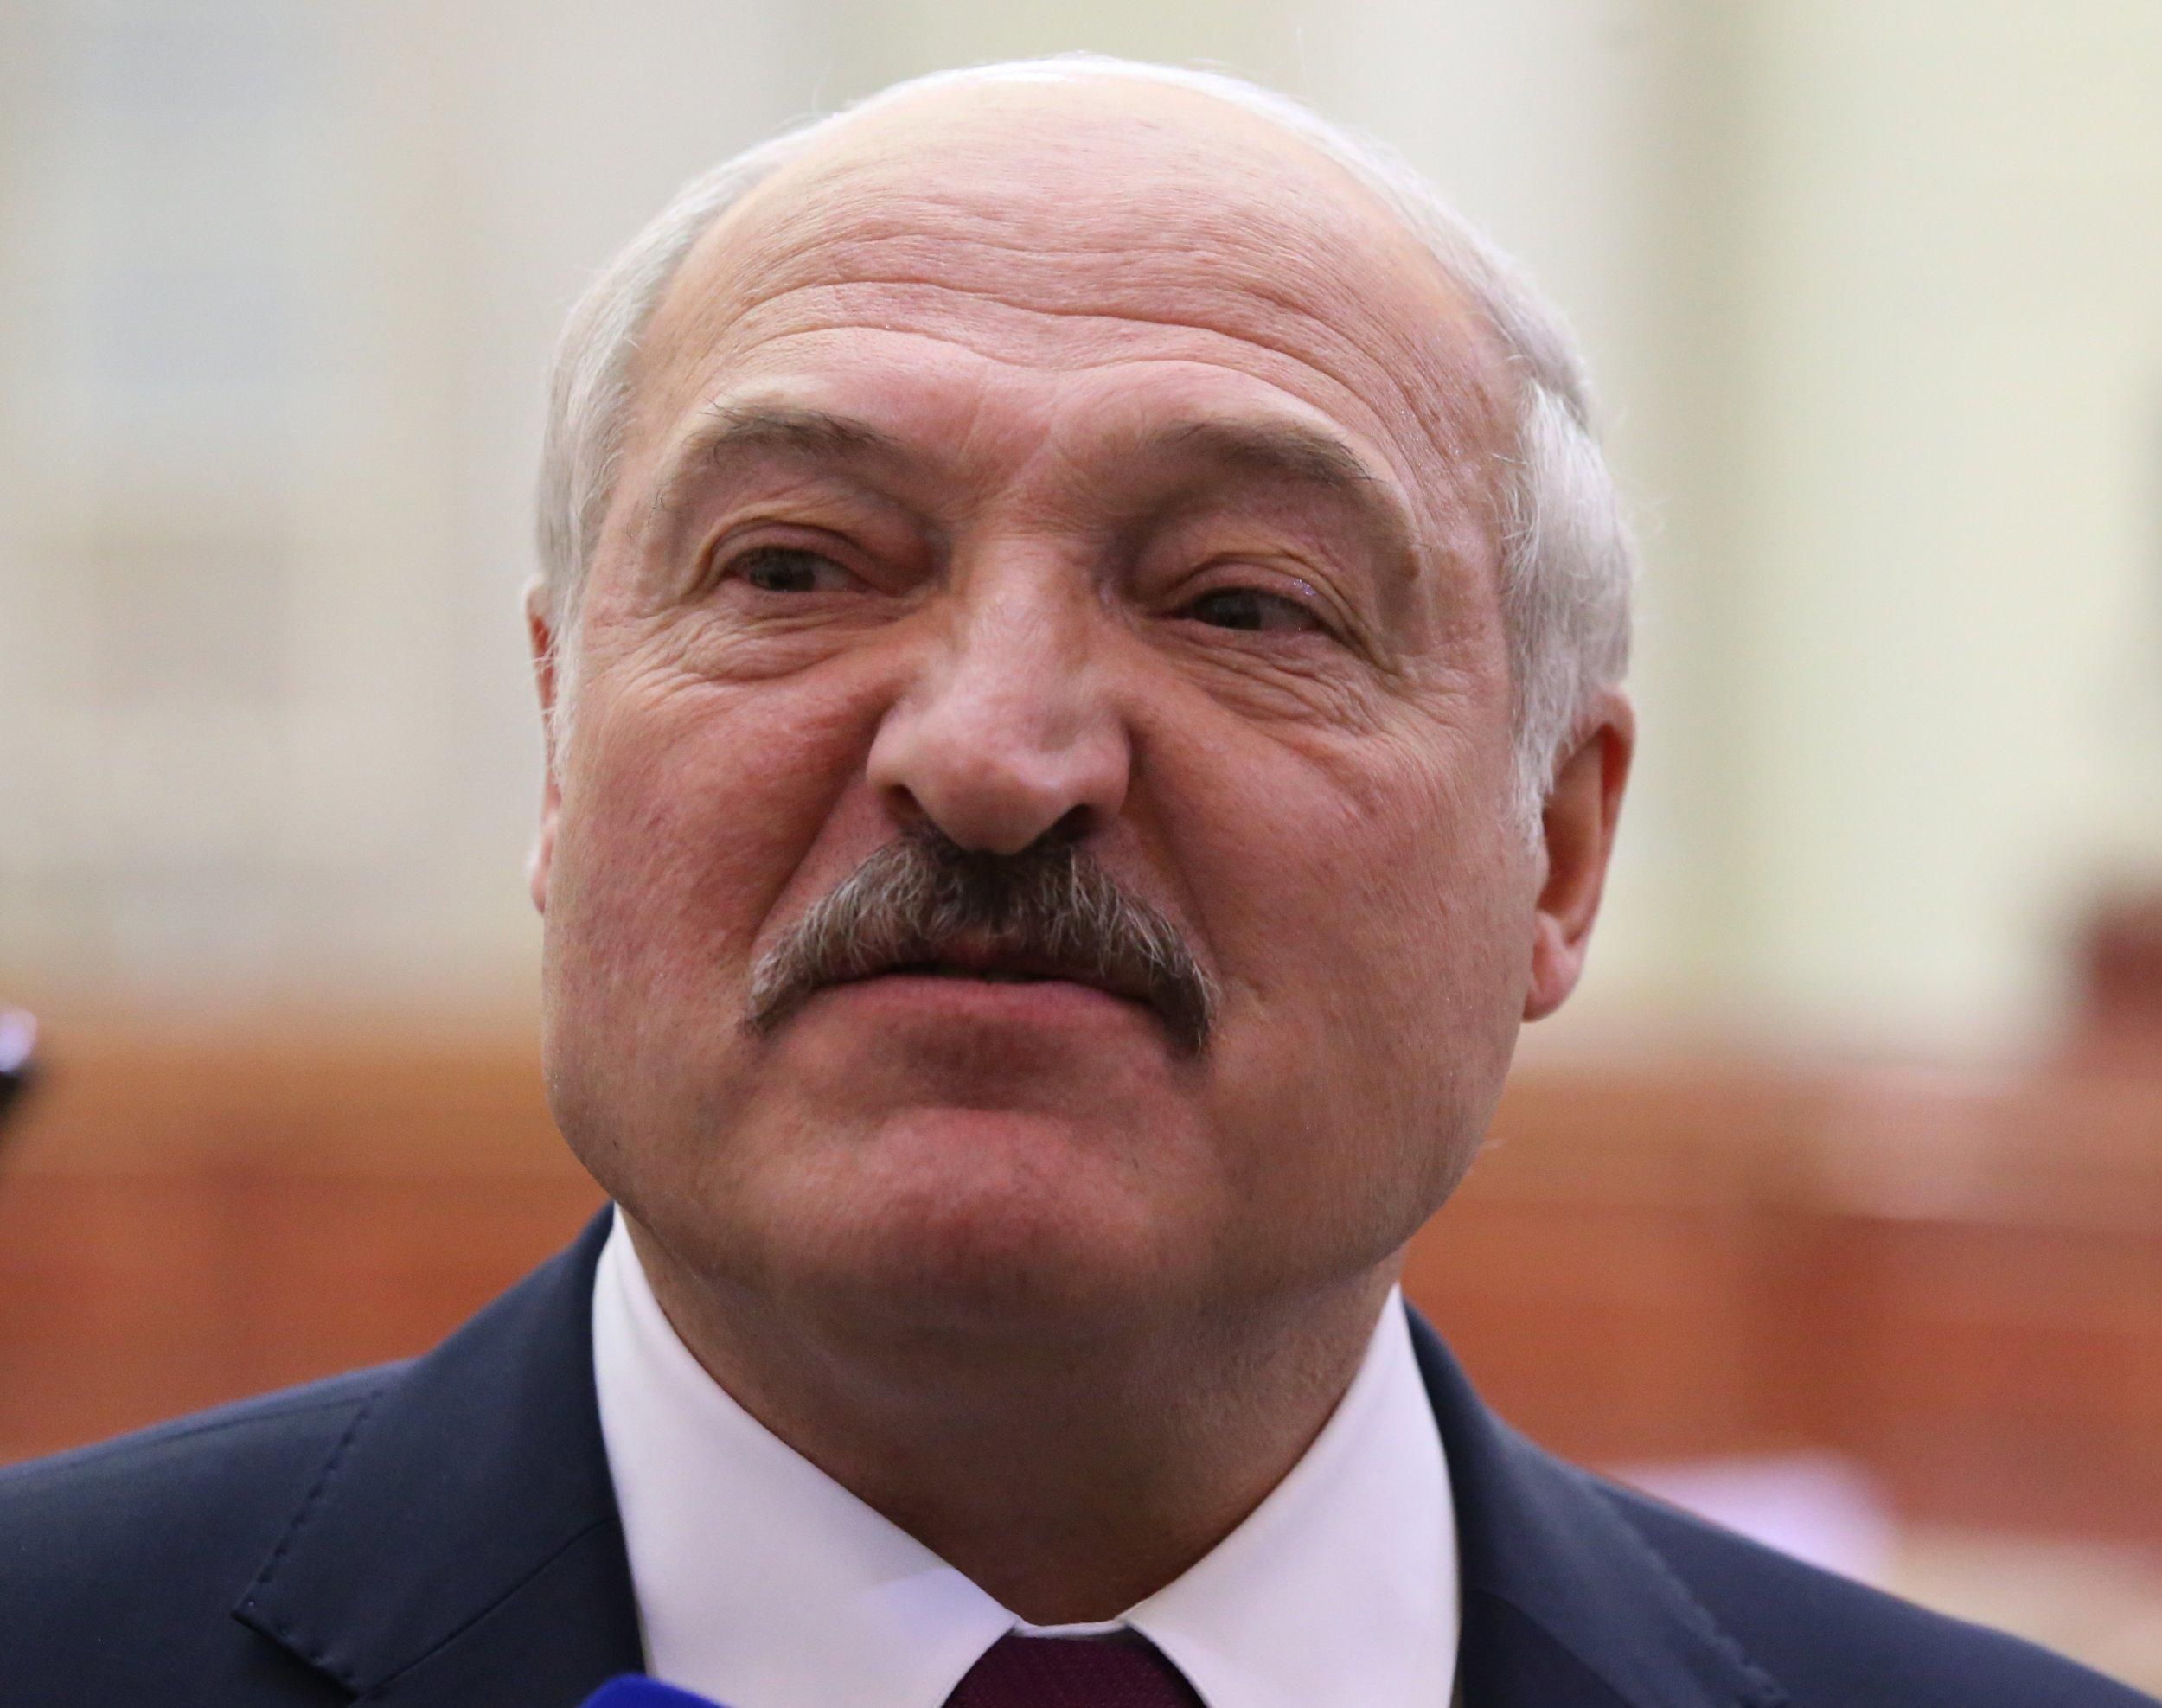 Лукашенко розказав байки про "сотні могил біженців" на польській стороні - новини Білорусь - 24 Канал